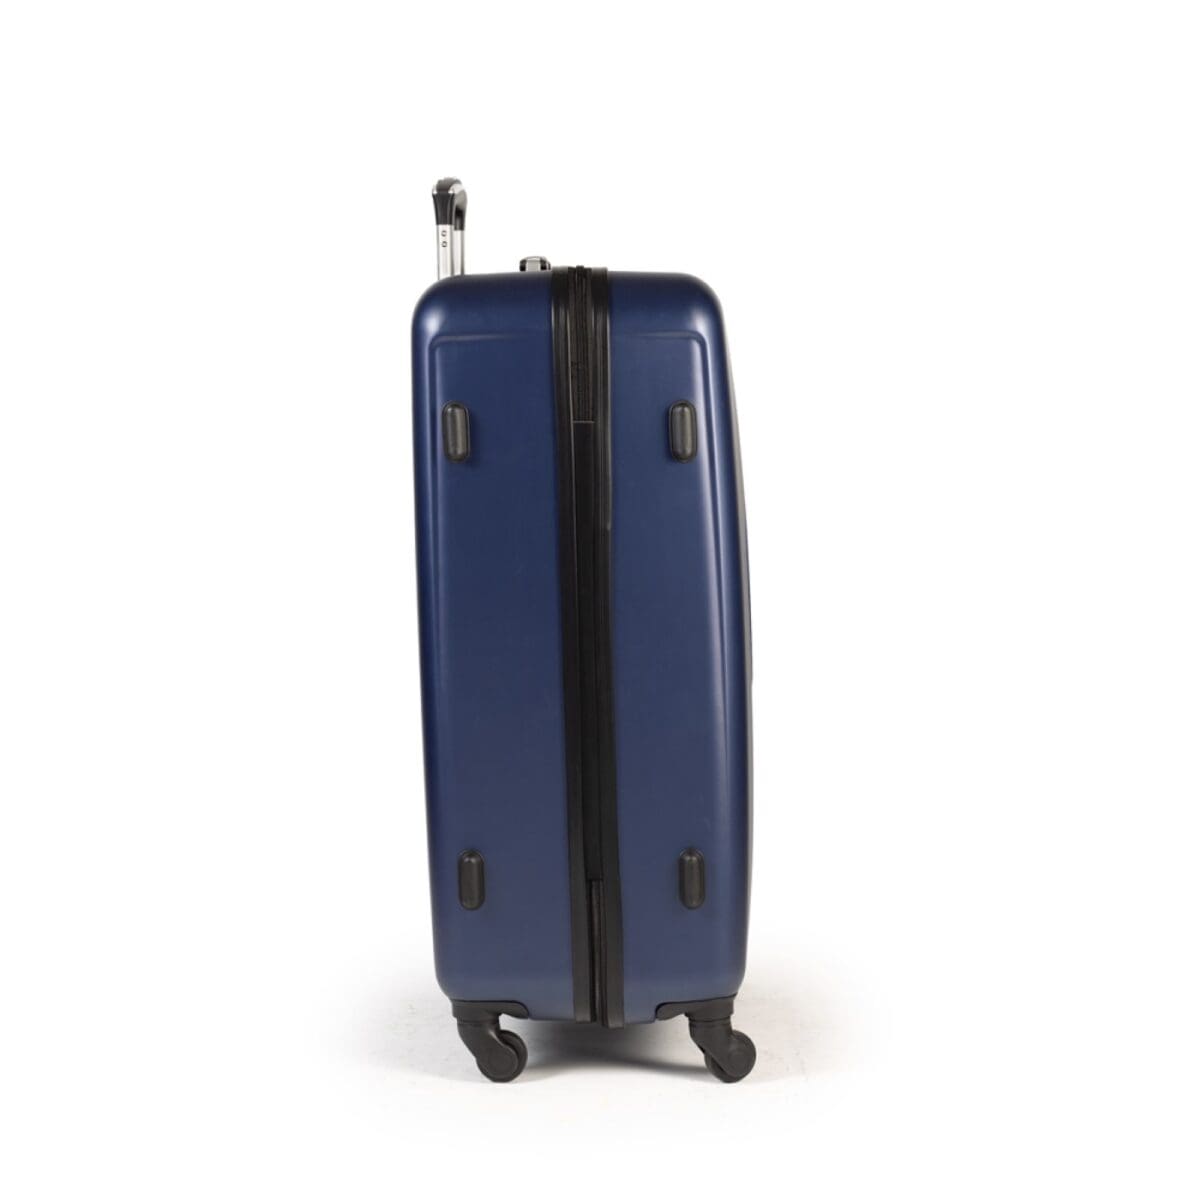 Βαλίτσα μεσαία με κλειδαριά , υλικό abs σε χρώμα μπλε .